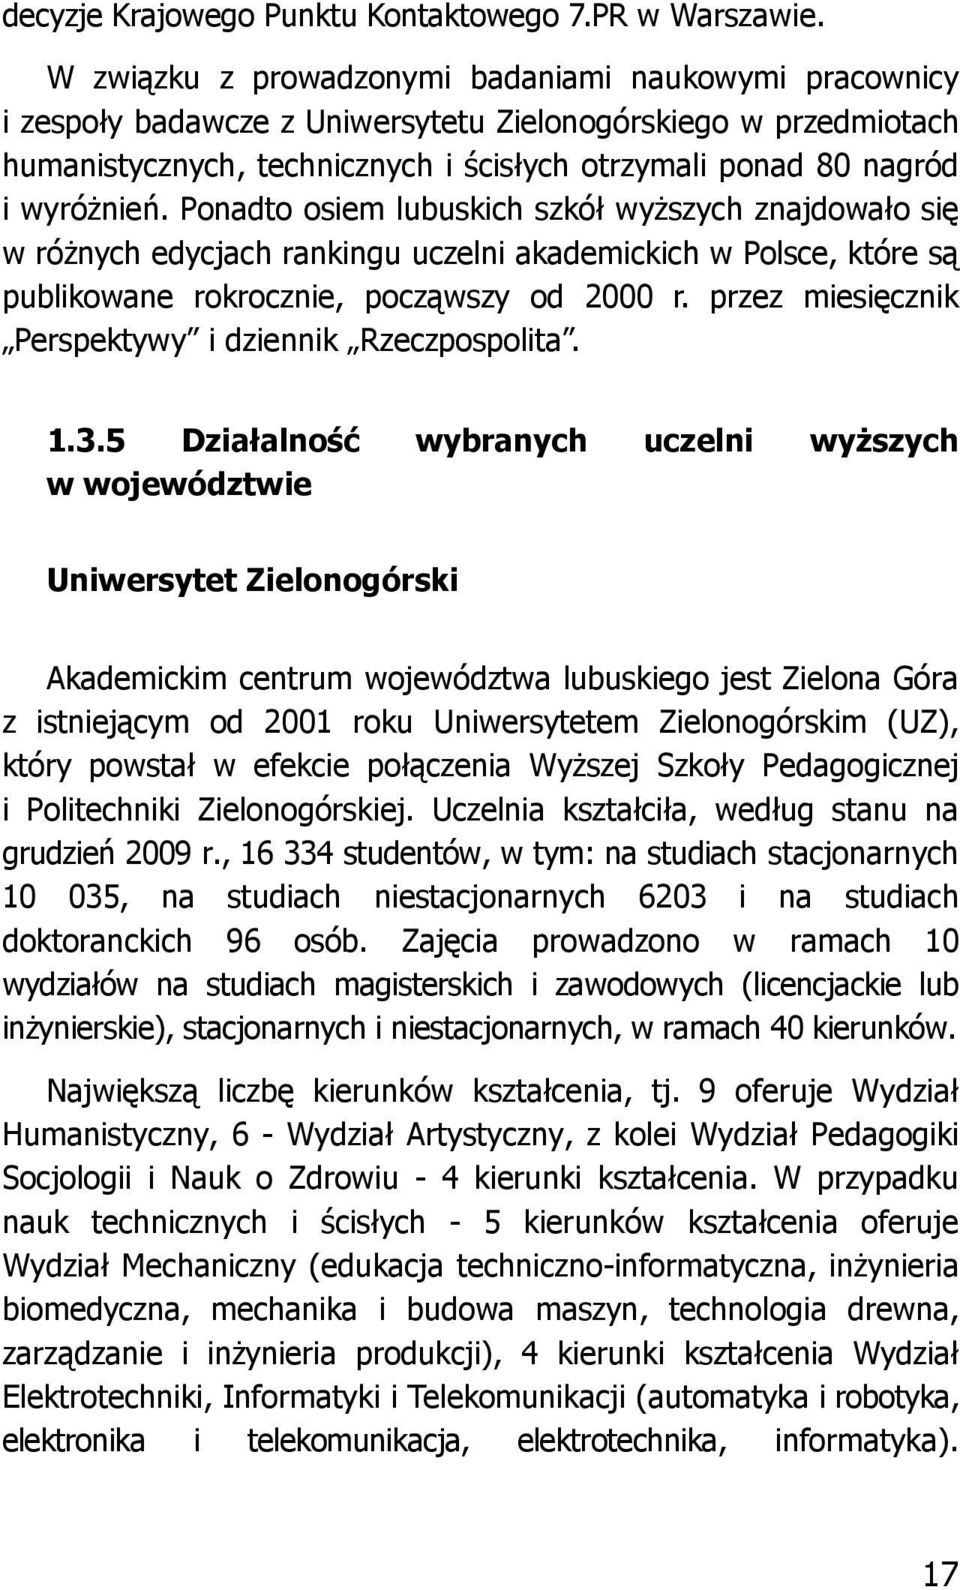 wyróżnień. Ponadto osiem lubuskich szkół wyższych znajdowało się w różnych edycjach rankingu uczelni akademickich w Polsce, które są publikowane rokrocznie, począwszy od 2000 r.